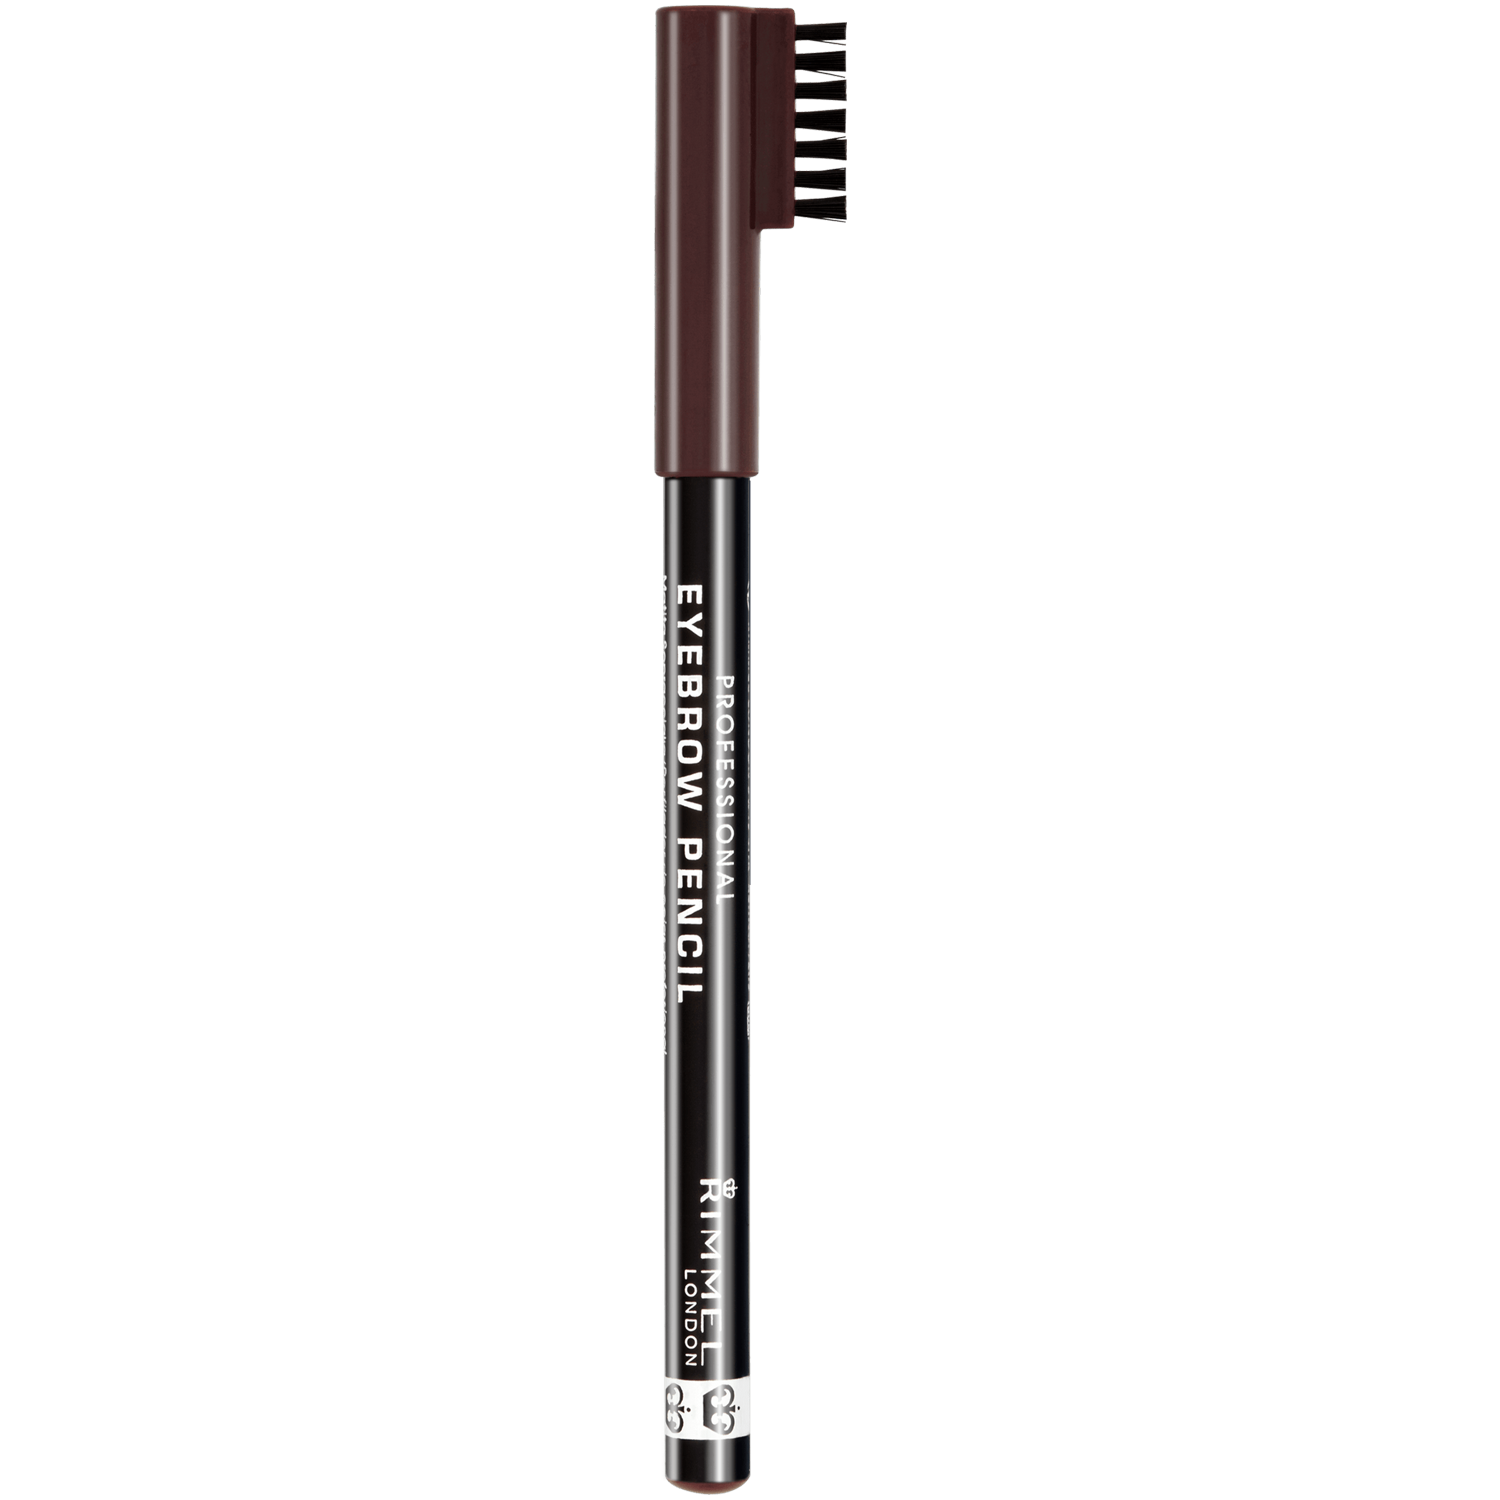 карандаш для бровей revolution pro карандаш для бровей контурный со щеточкой rockstar brow styler Карандаш для бровей с расческой темно-коричневый 0 Rimmel Professional, 1 гр